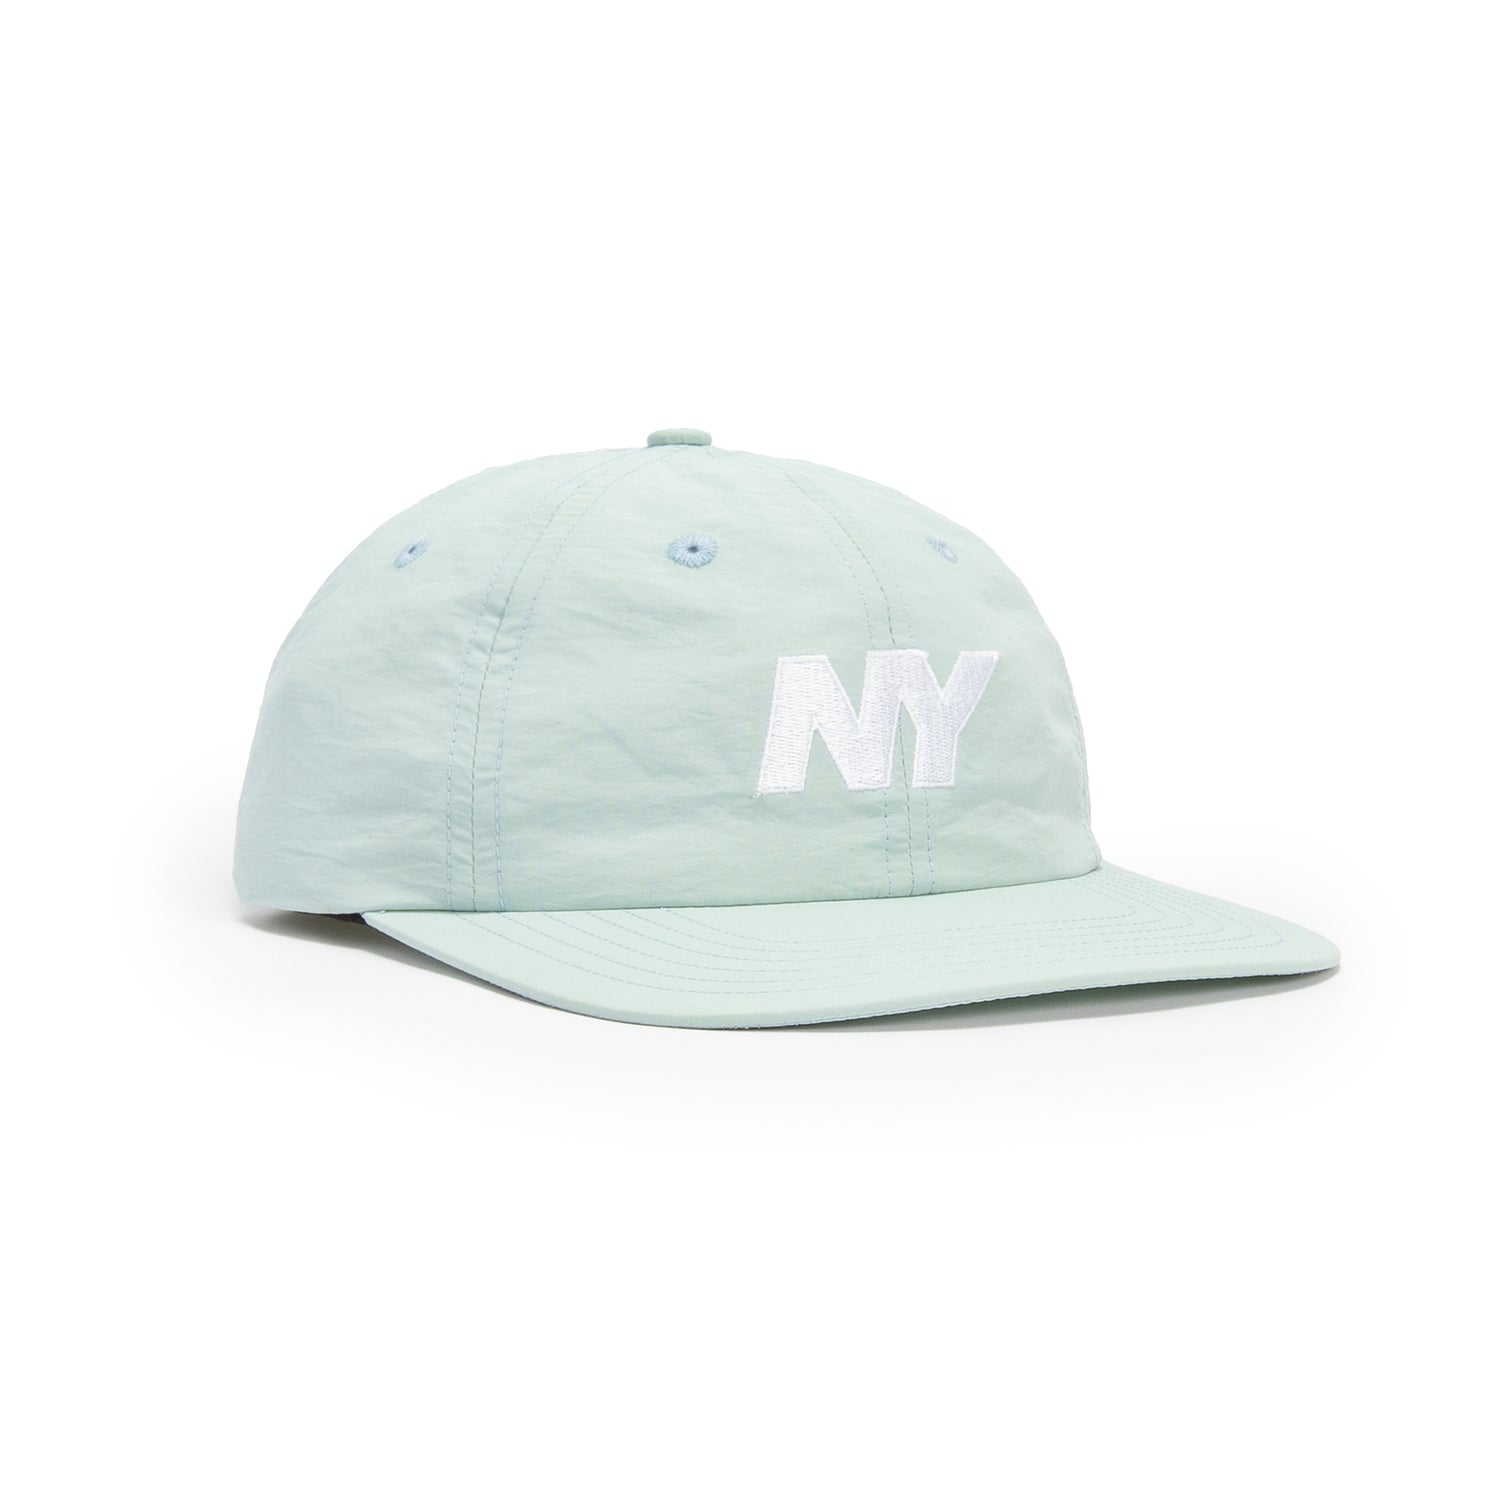 Only NY NY Speed Logo Hat - Light Blue